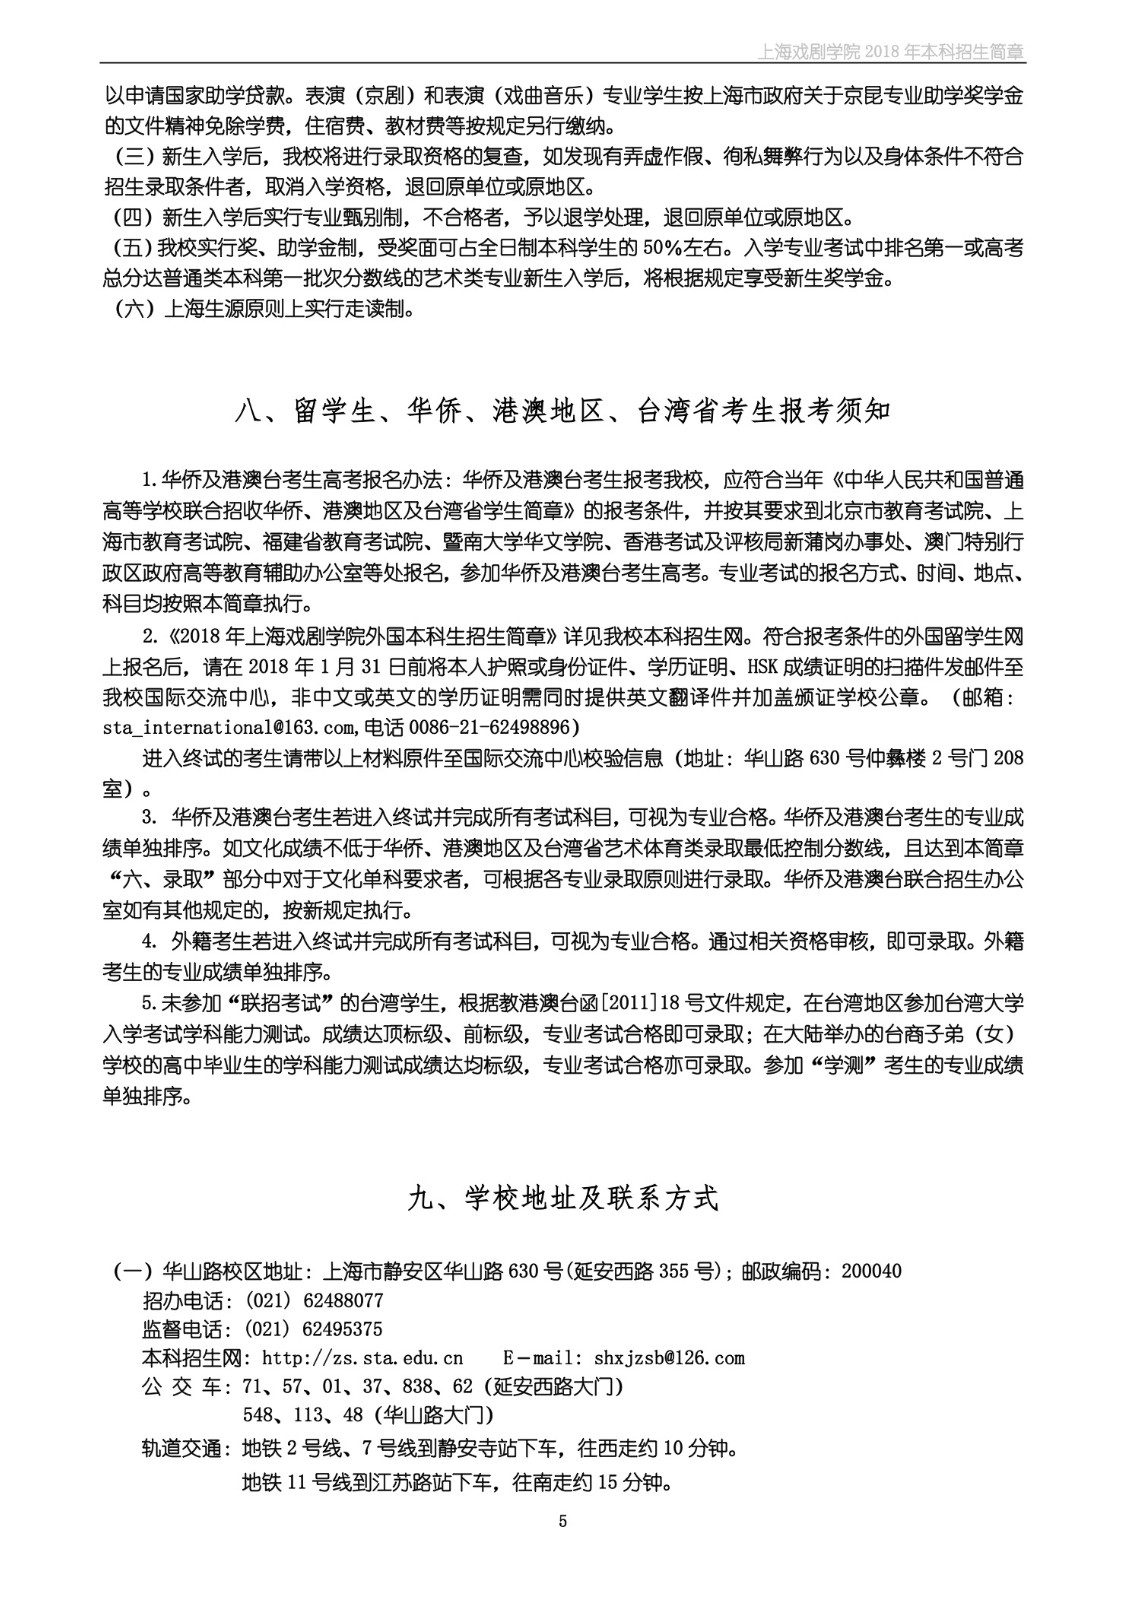 上海戏剧学院2018年本科招生简章-page5.jpeg